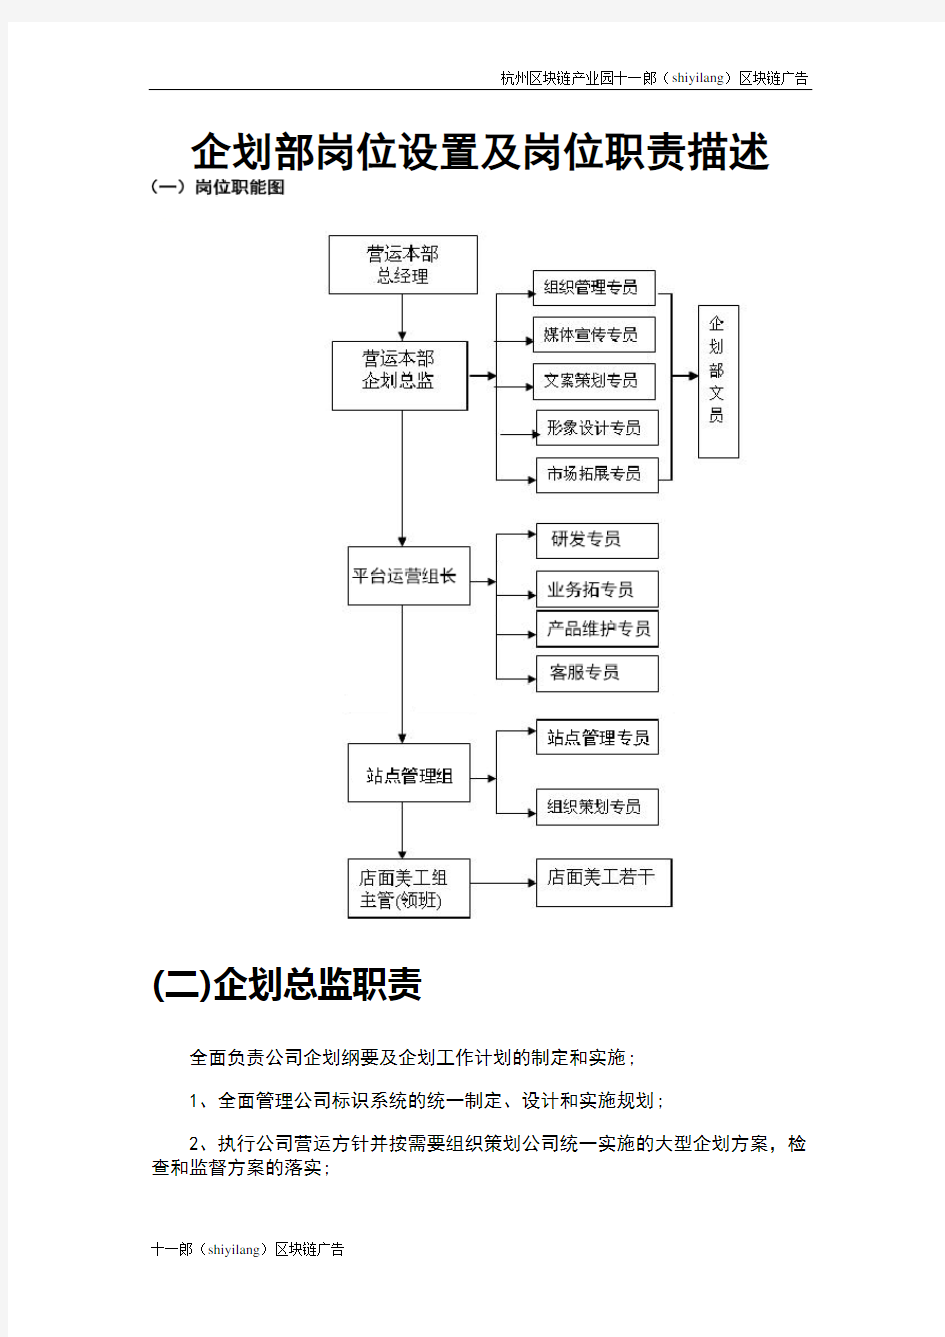 杭州区块链产业园企划部岗位设置及岗位职责描述